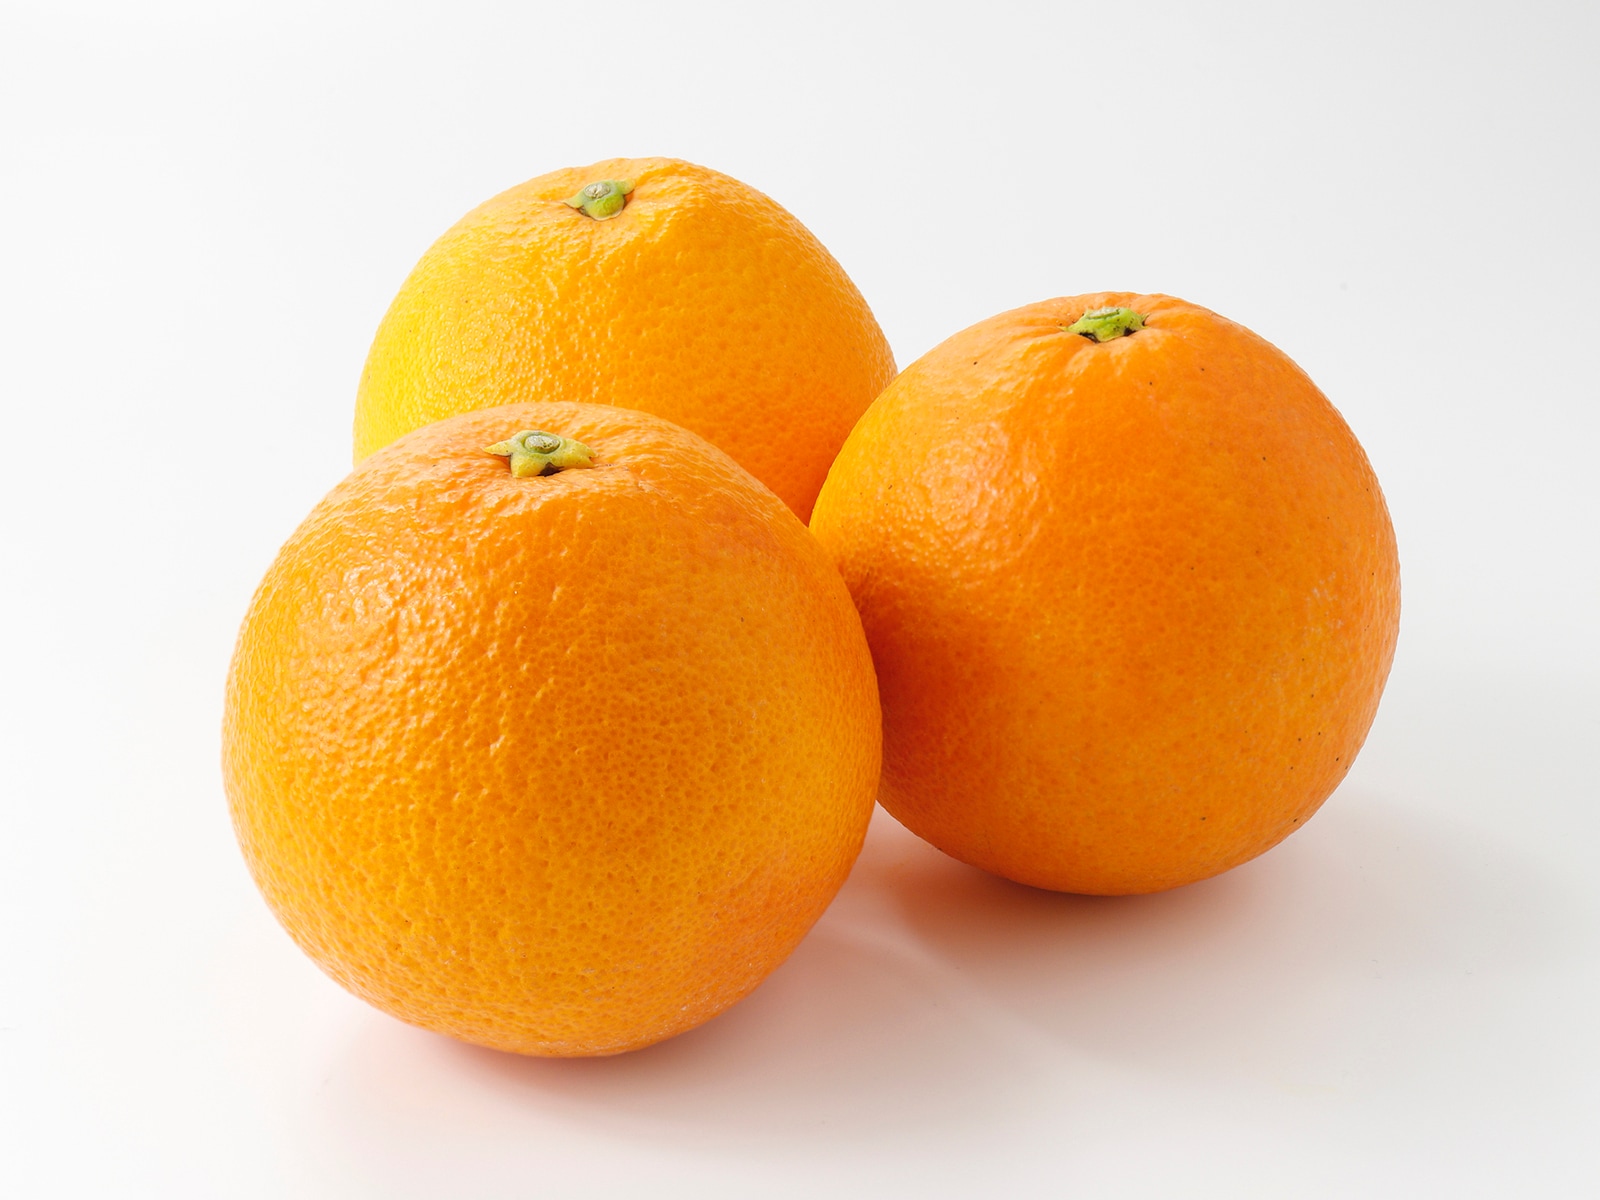 「オレンジ」の生産量が多い国ランキング